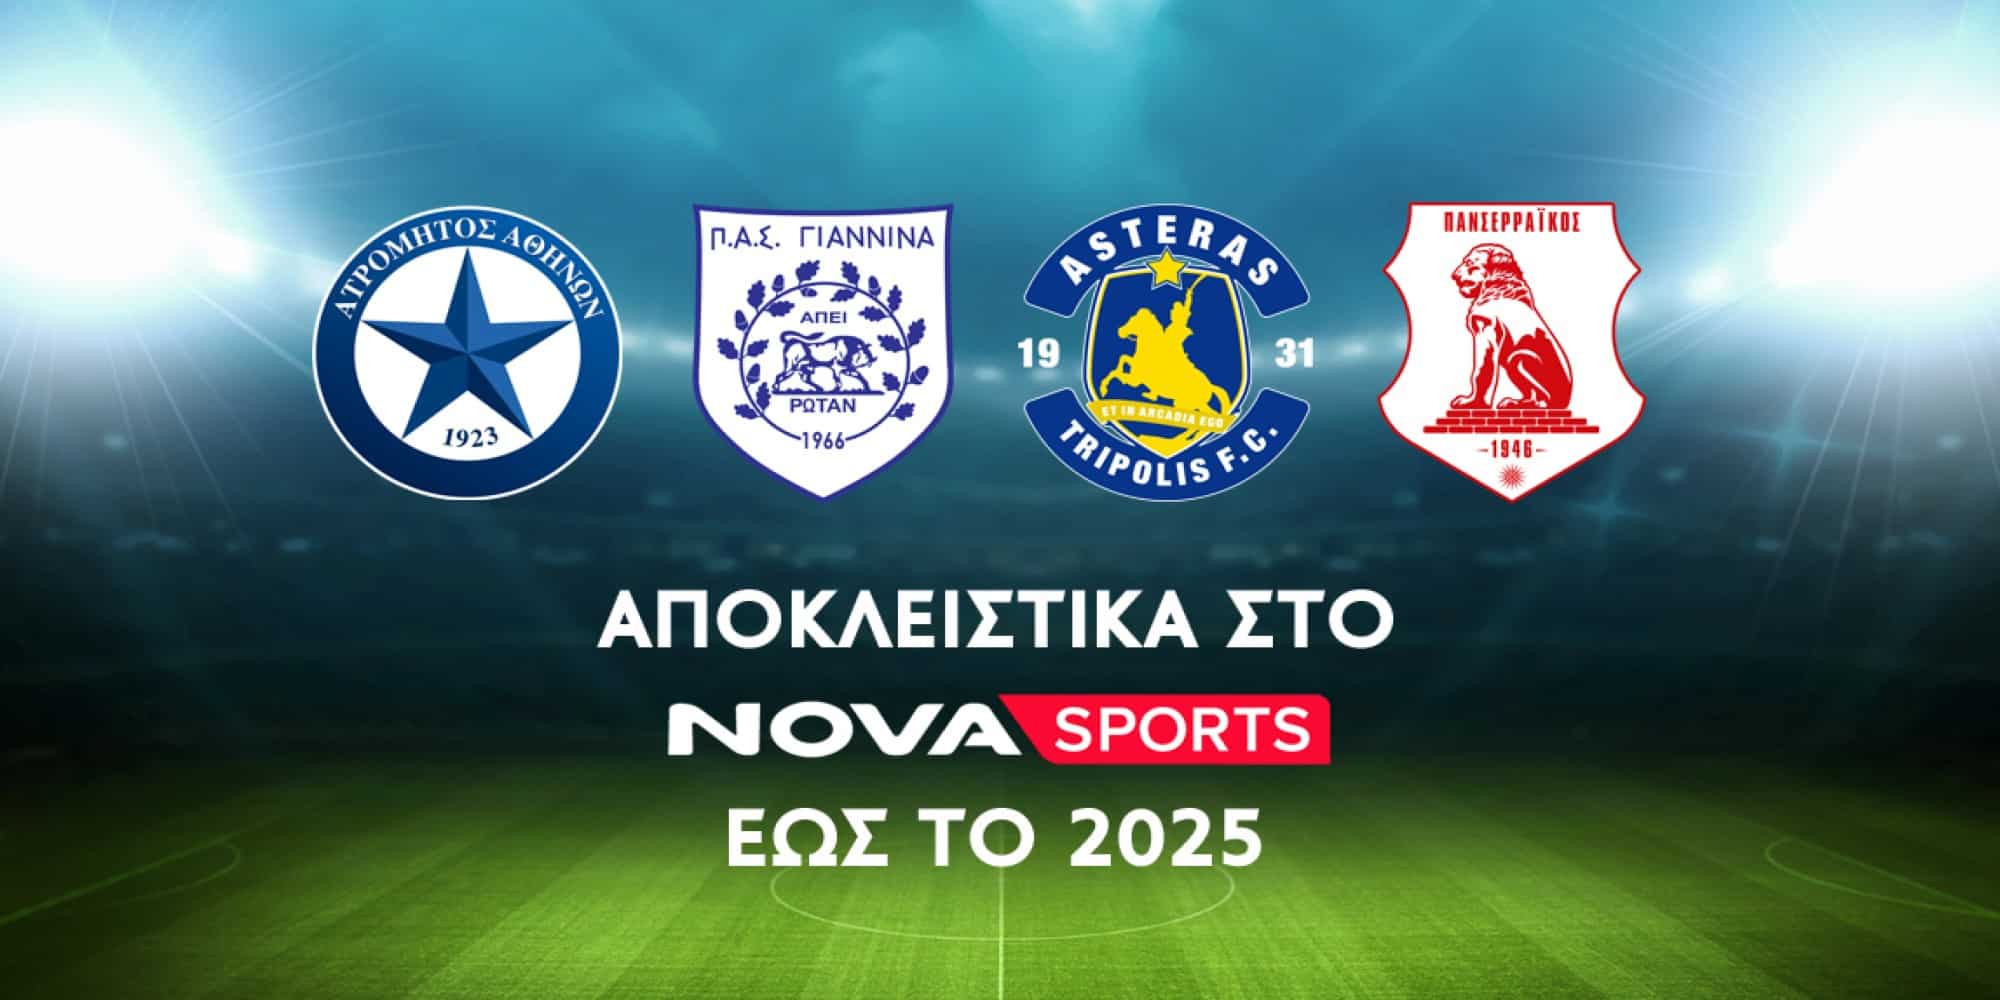 Ατρόμητος, ΠΑΣ Γιάννινα, Αστέρας Τρίπολης, και Πανσερραϊκός αποκλειστικά στο Novasports για τις επόμενες 2 σεζόν έως το 2025!